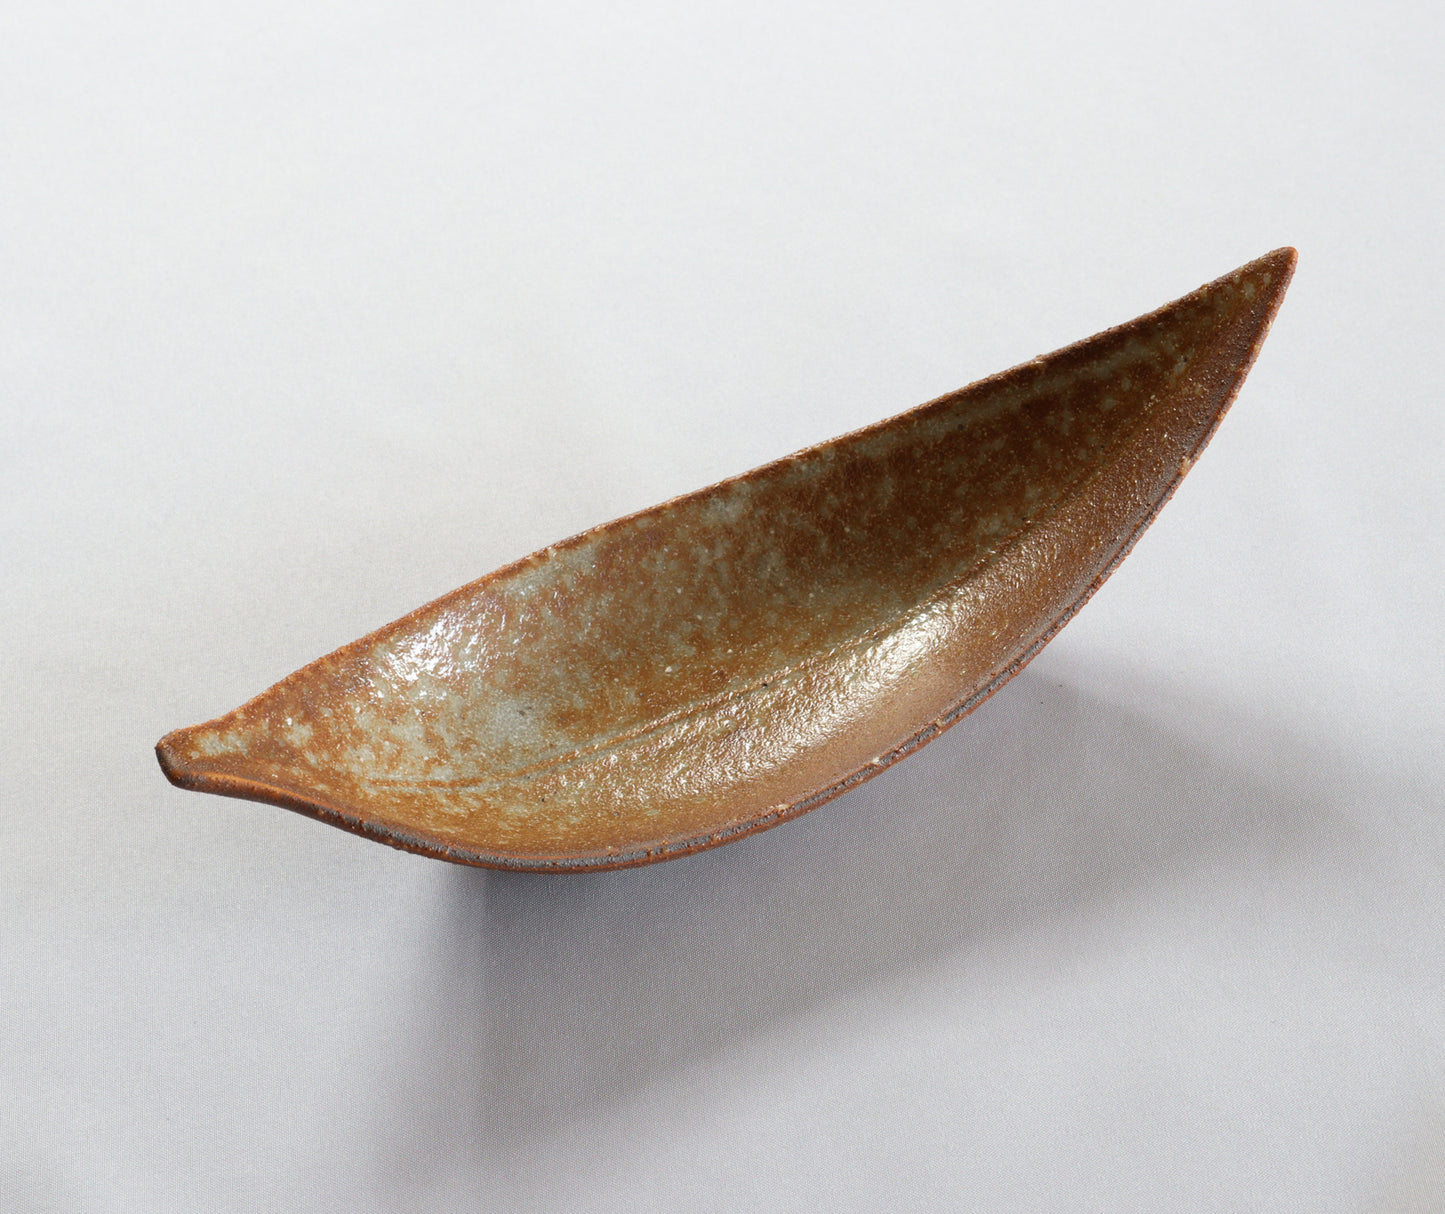 3102-0204　美濃焼　ハイブリッド陶器・磁器
笹葉小付 （15.5×5.4×H5.5）